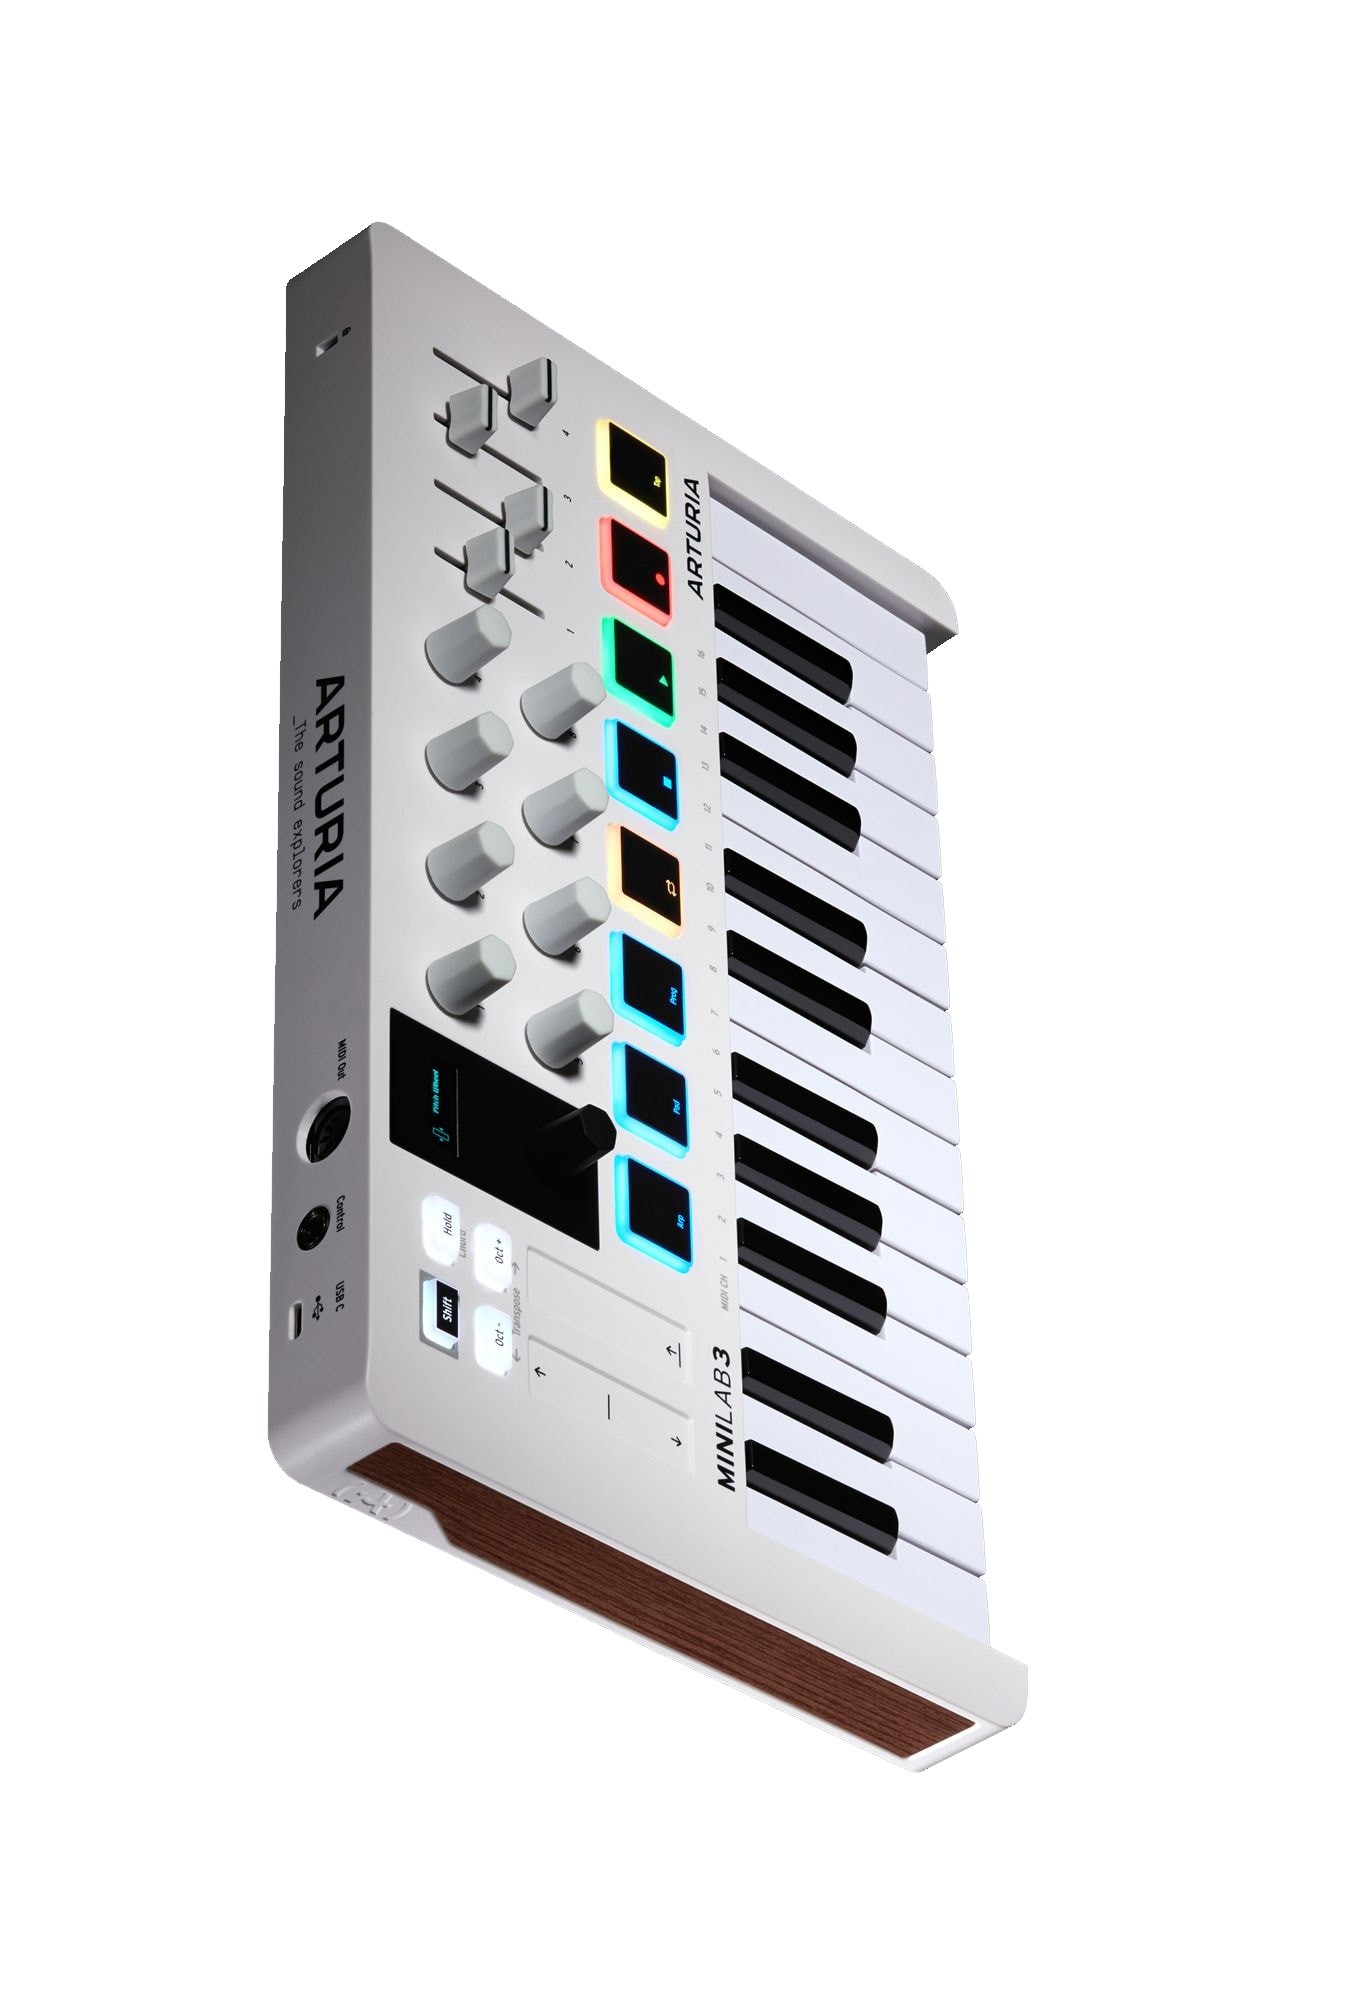 Arturia MiniLab 3 Midi Keyboard Controller (White)